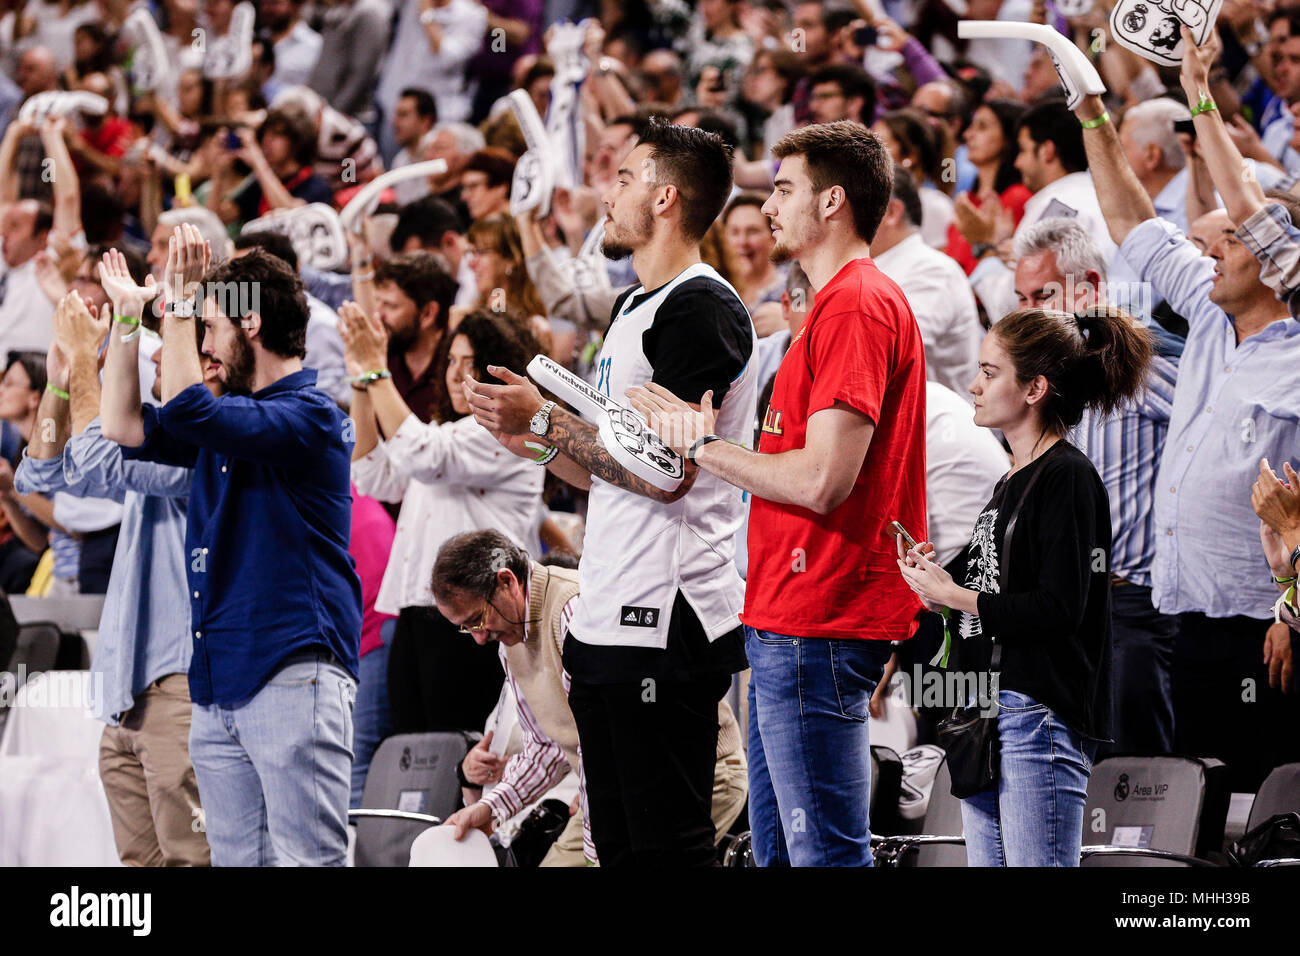 Hernangomez brothers take pride in Spain's legacy - Eurohoops